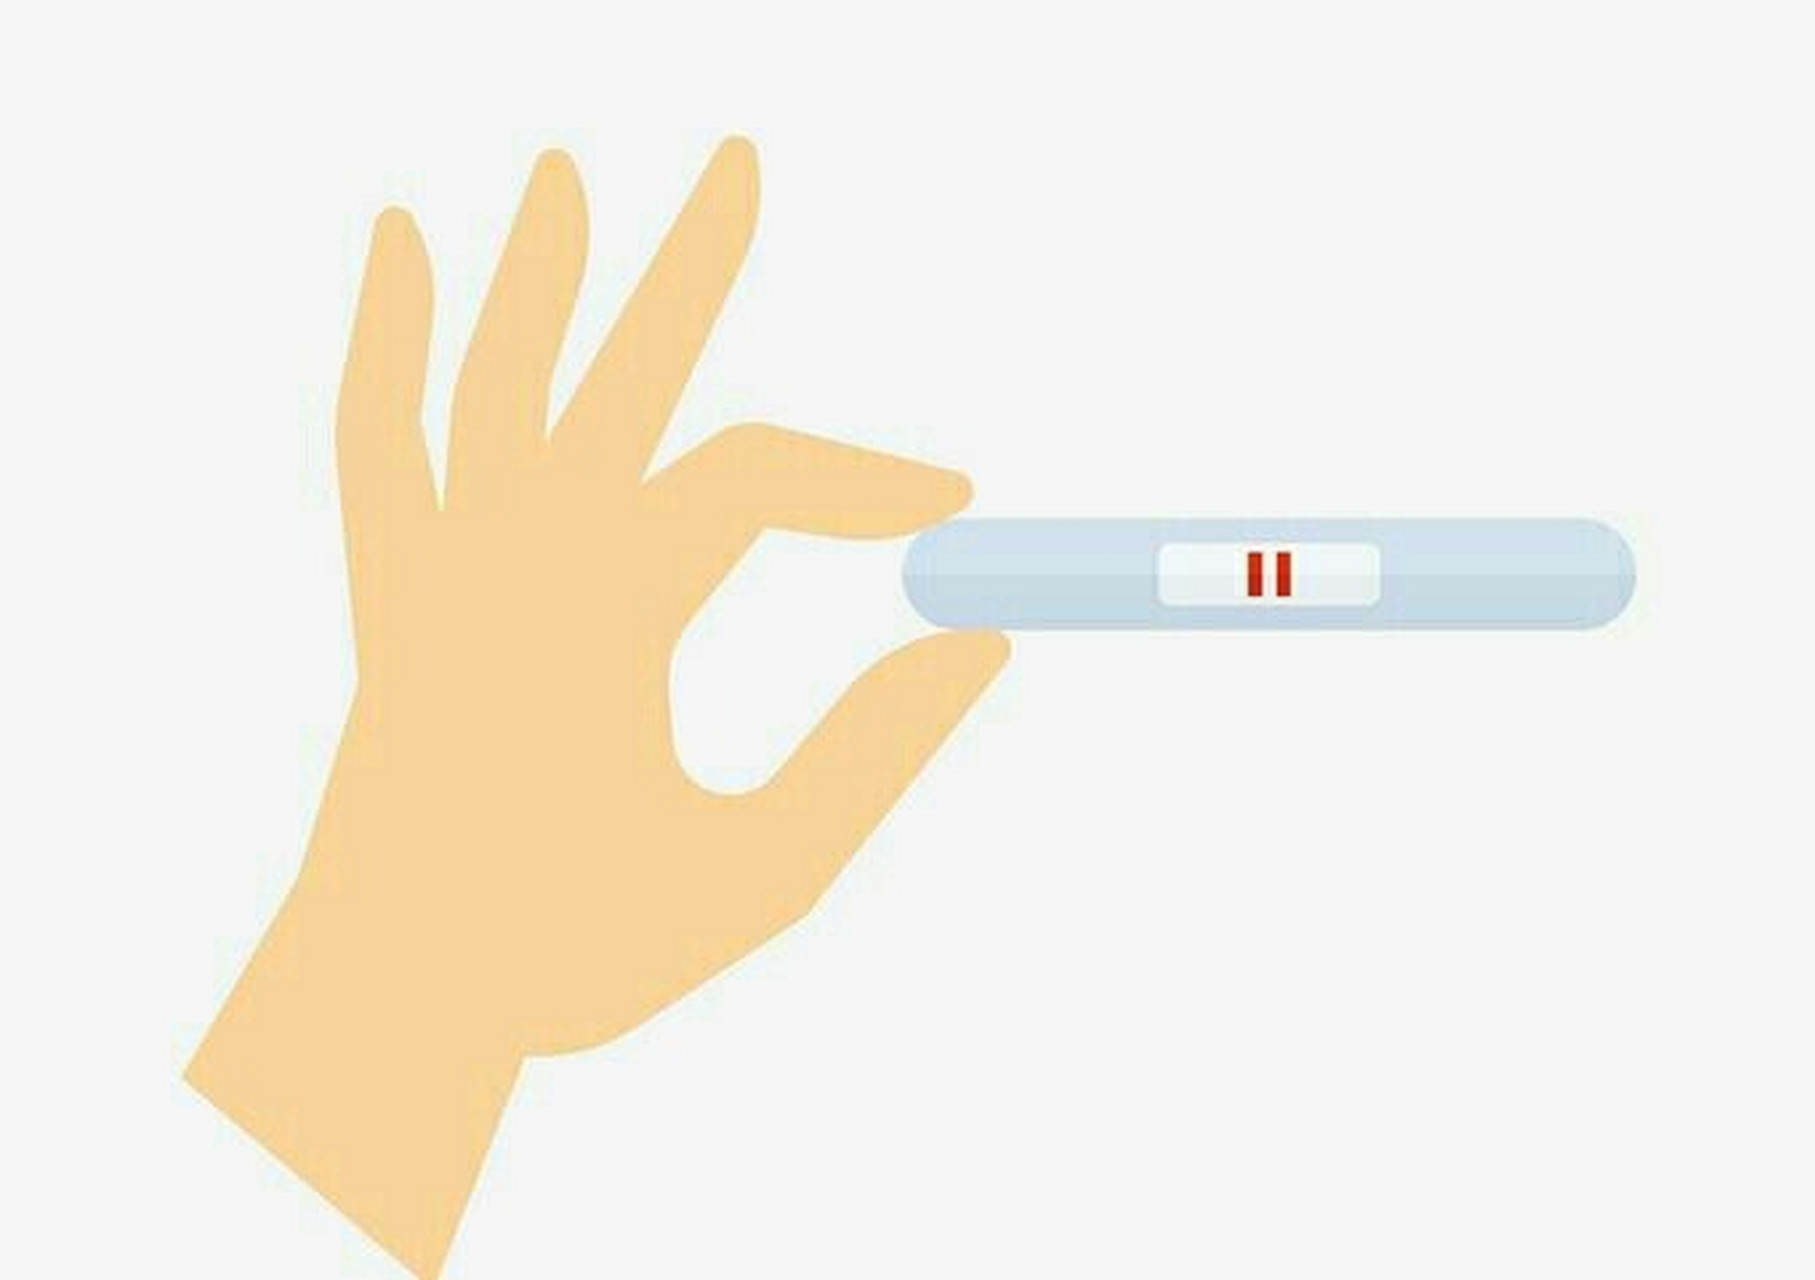 怀孕后,最早几天可以测出来? 答案:同房后10~14天,阳性率较高